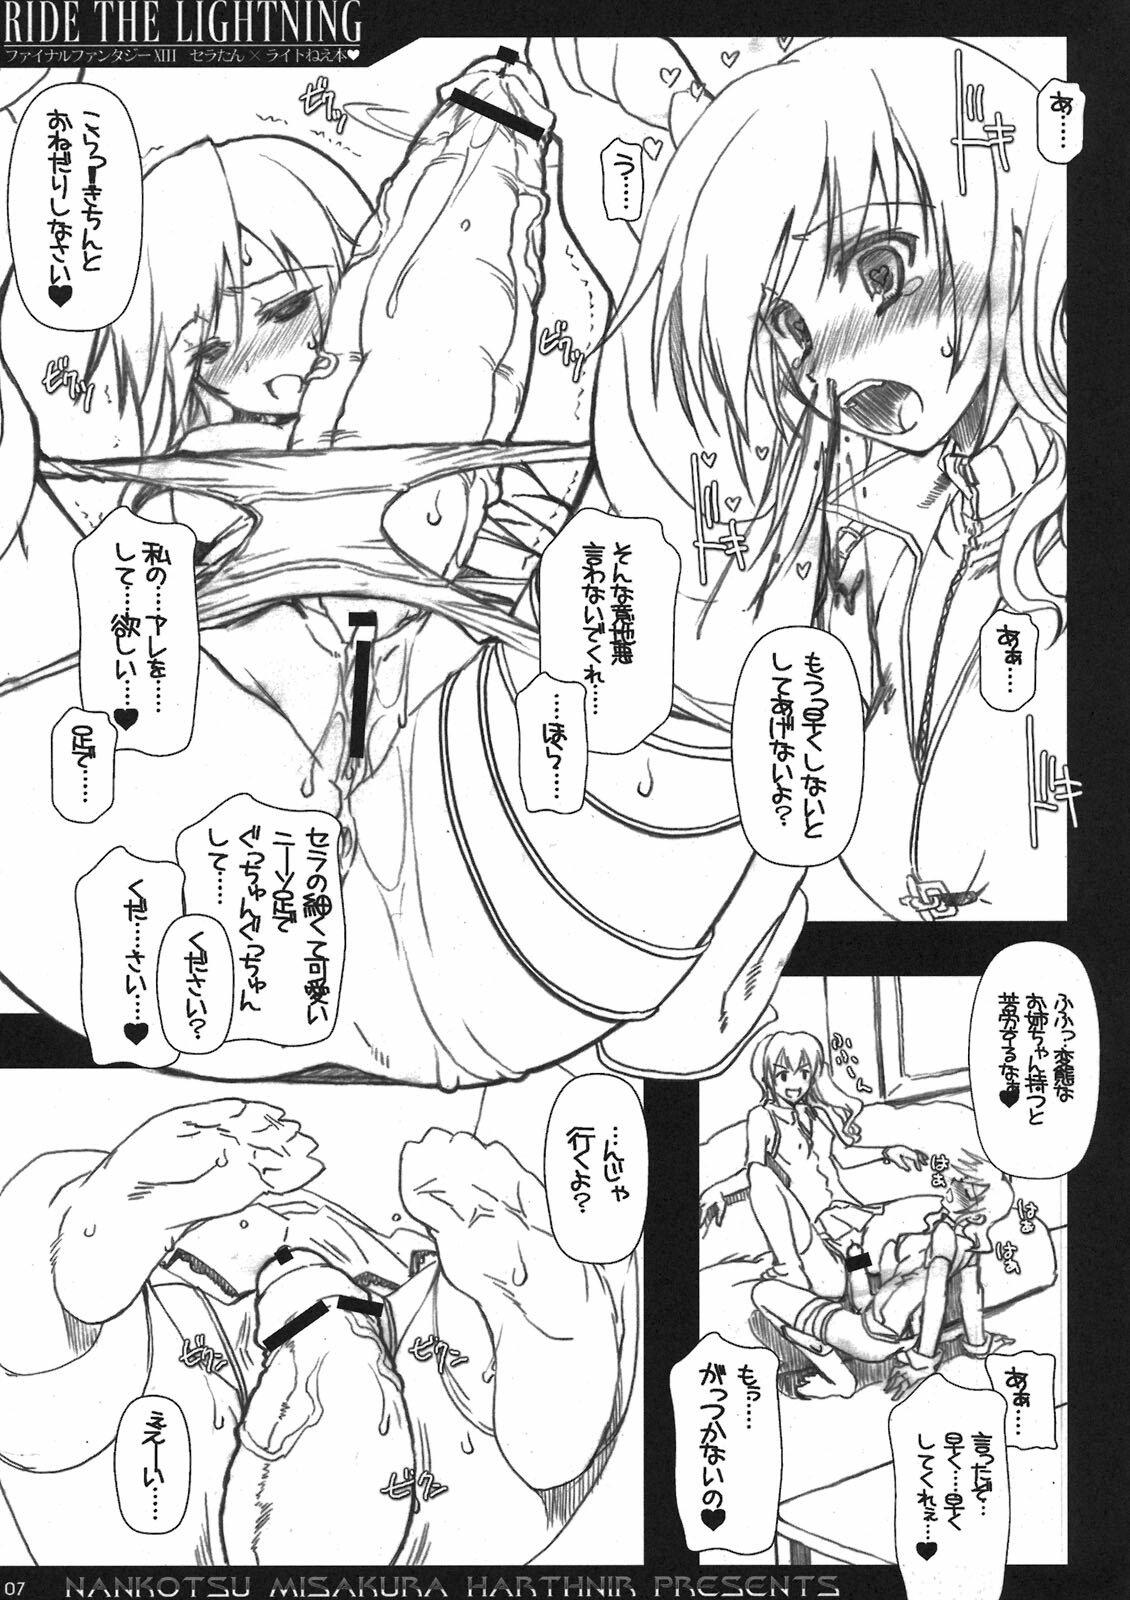 [HarthNir (Misakura Nankotsu)] RIDE THE LIGHTNING (Final Fantasy XIII) page 7 full